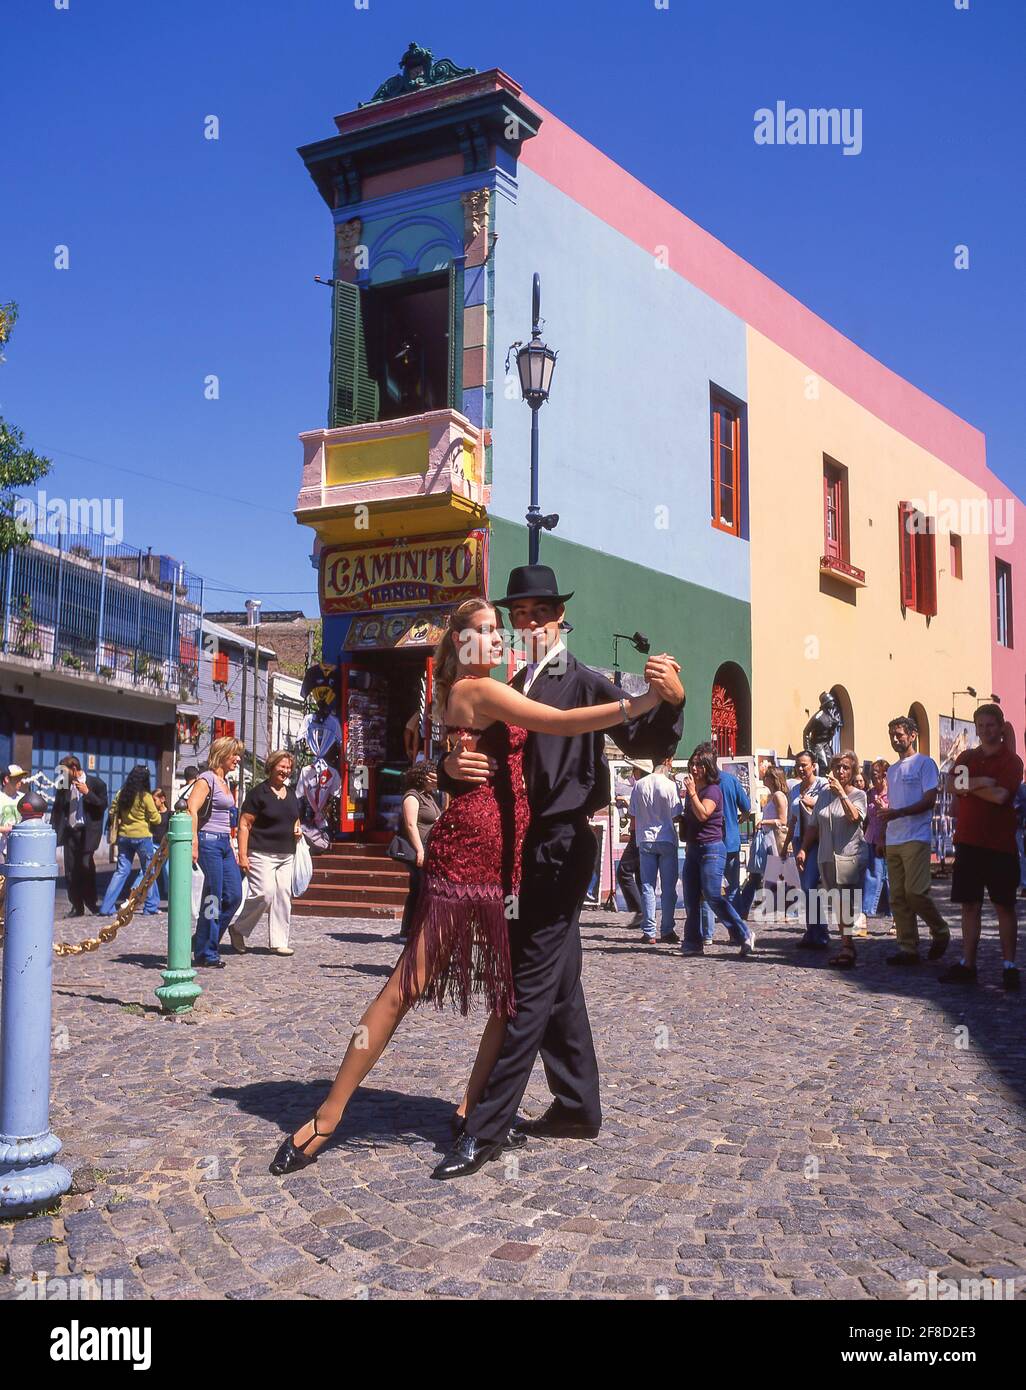 Danseurs de tango de rue, la rue Caminito, la Boca, Buenos Aires, Argentine Banque D'Images